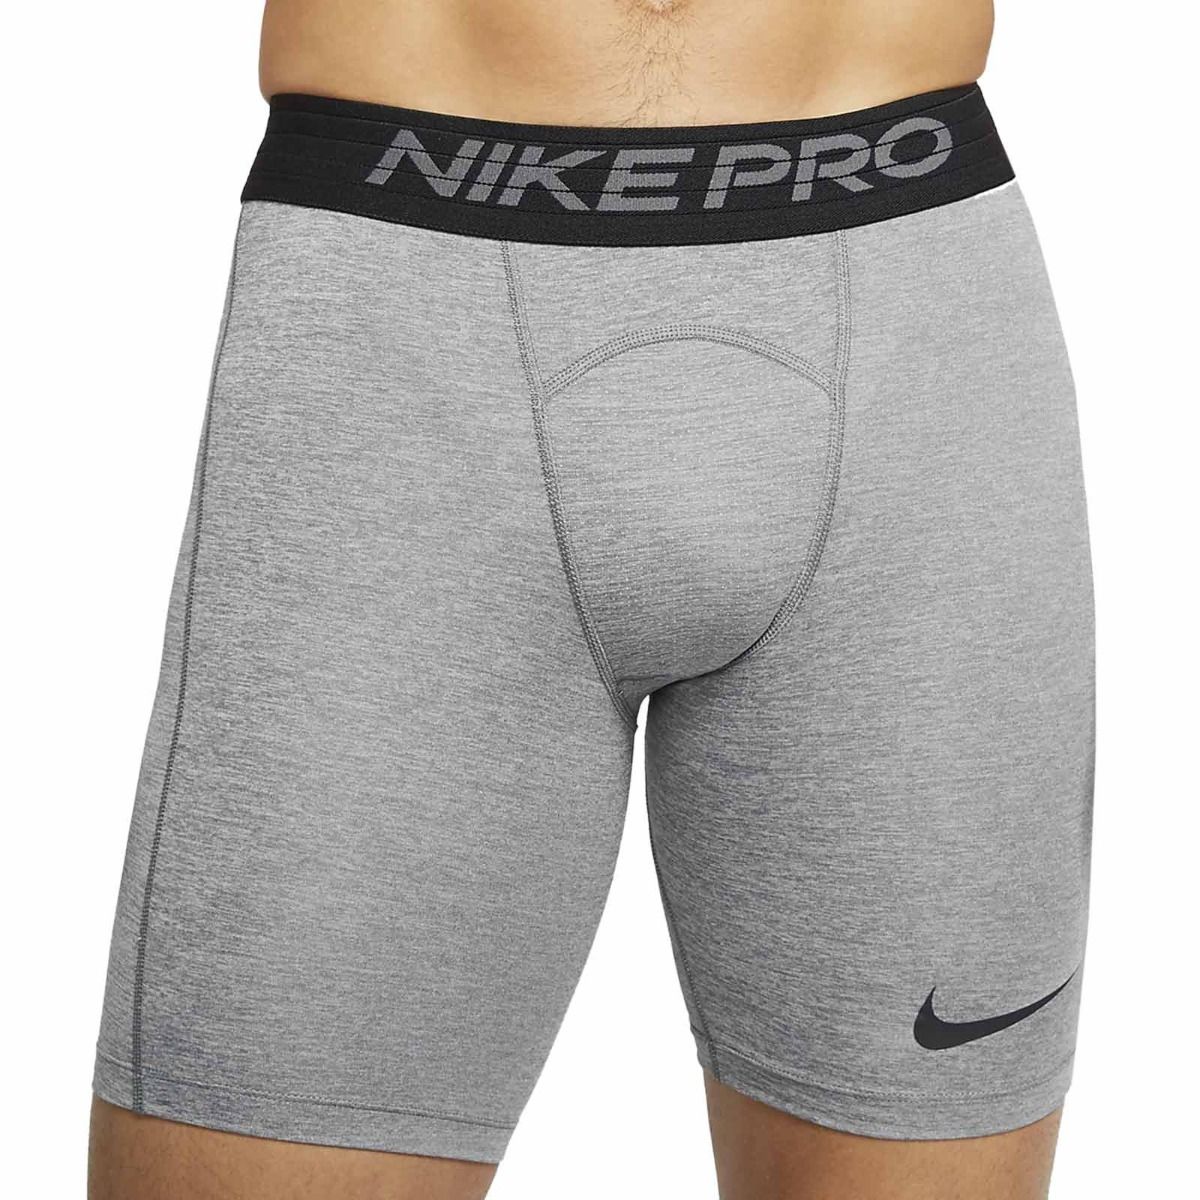 Nike Pro Running Short